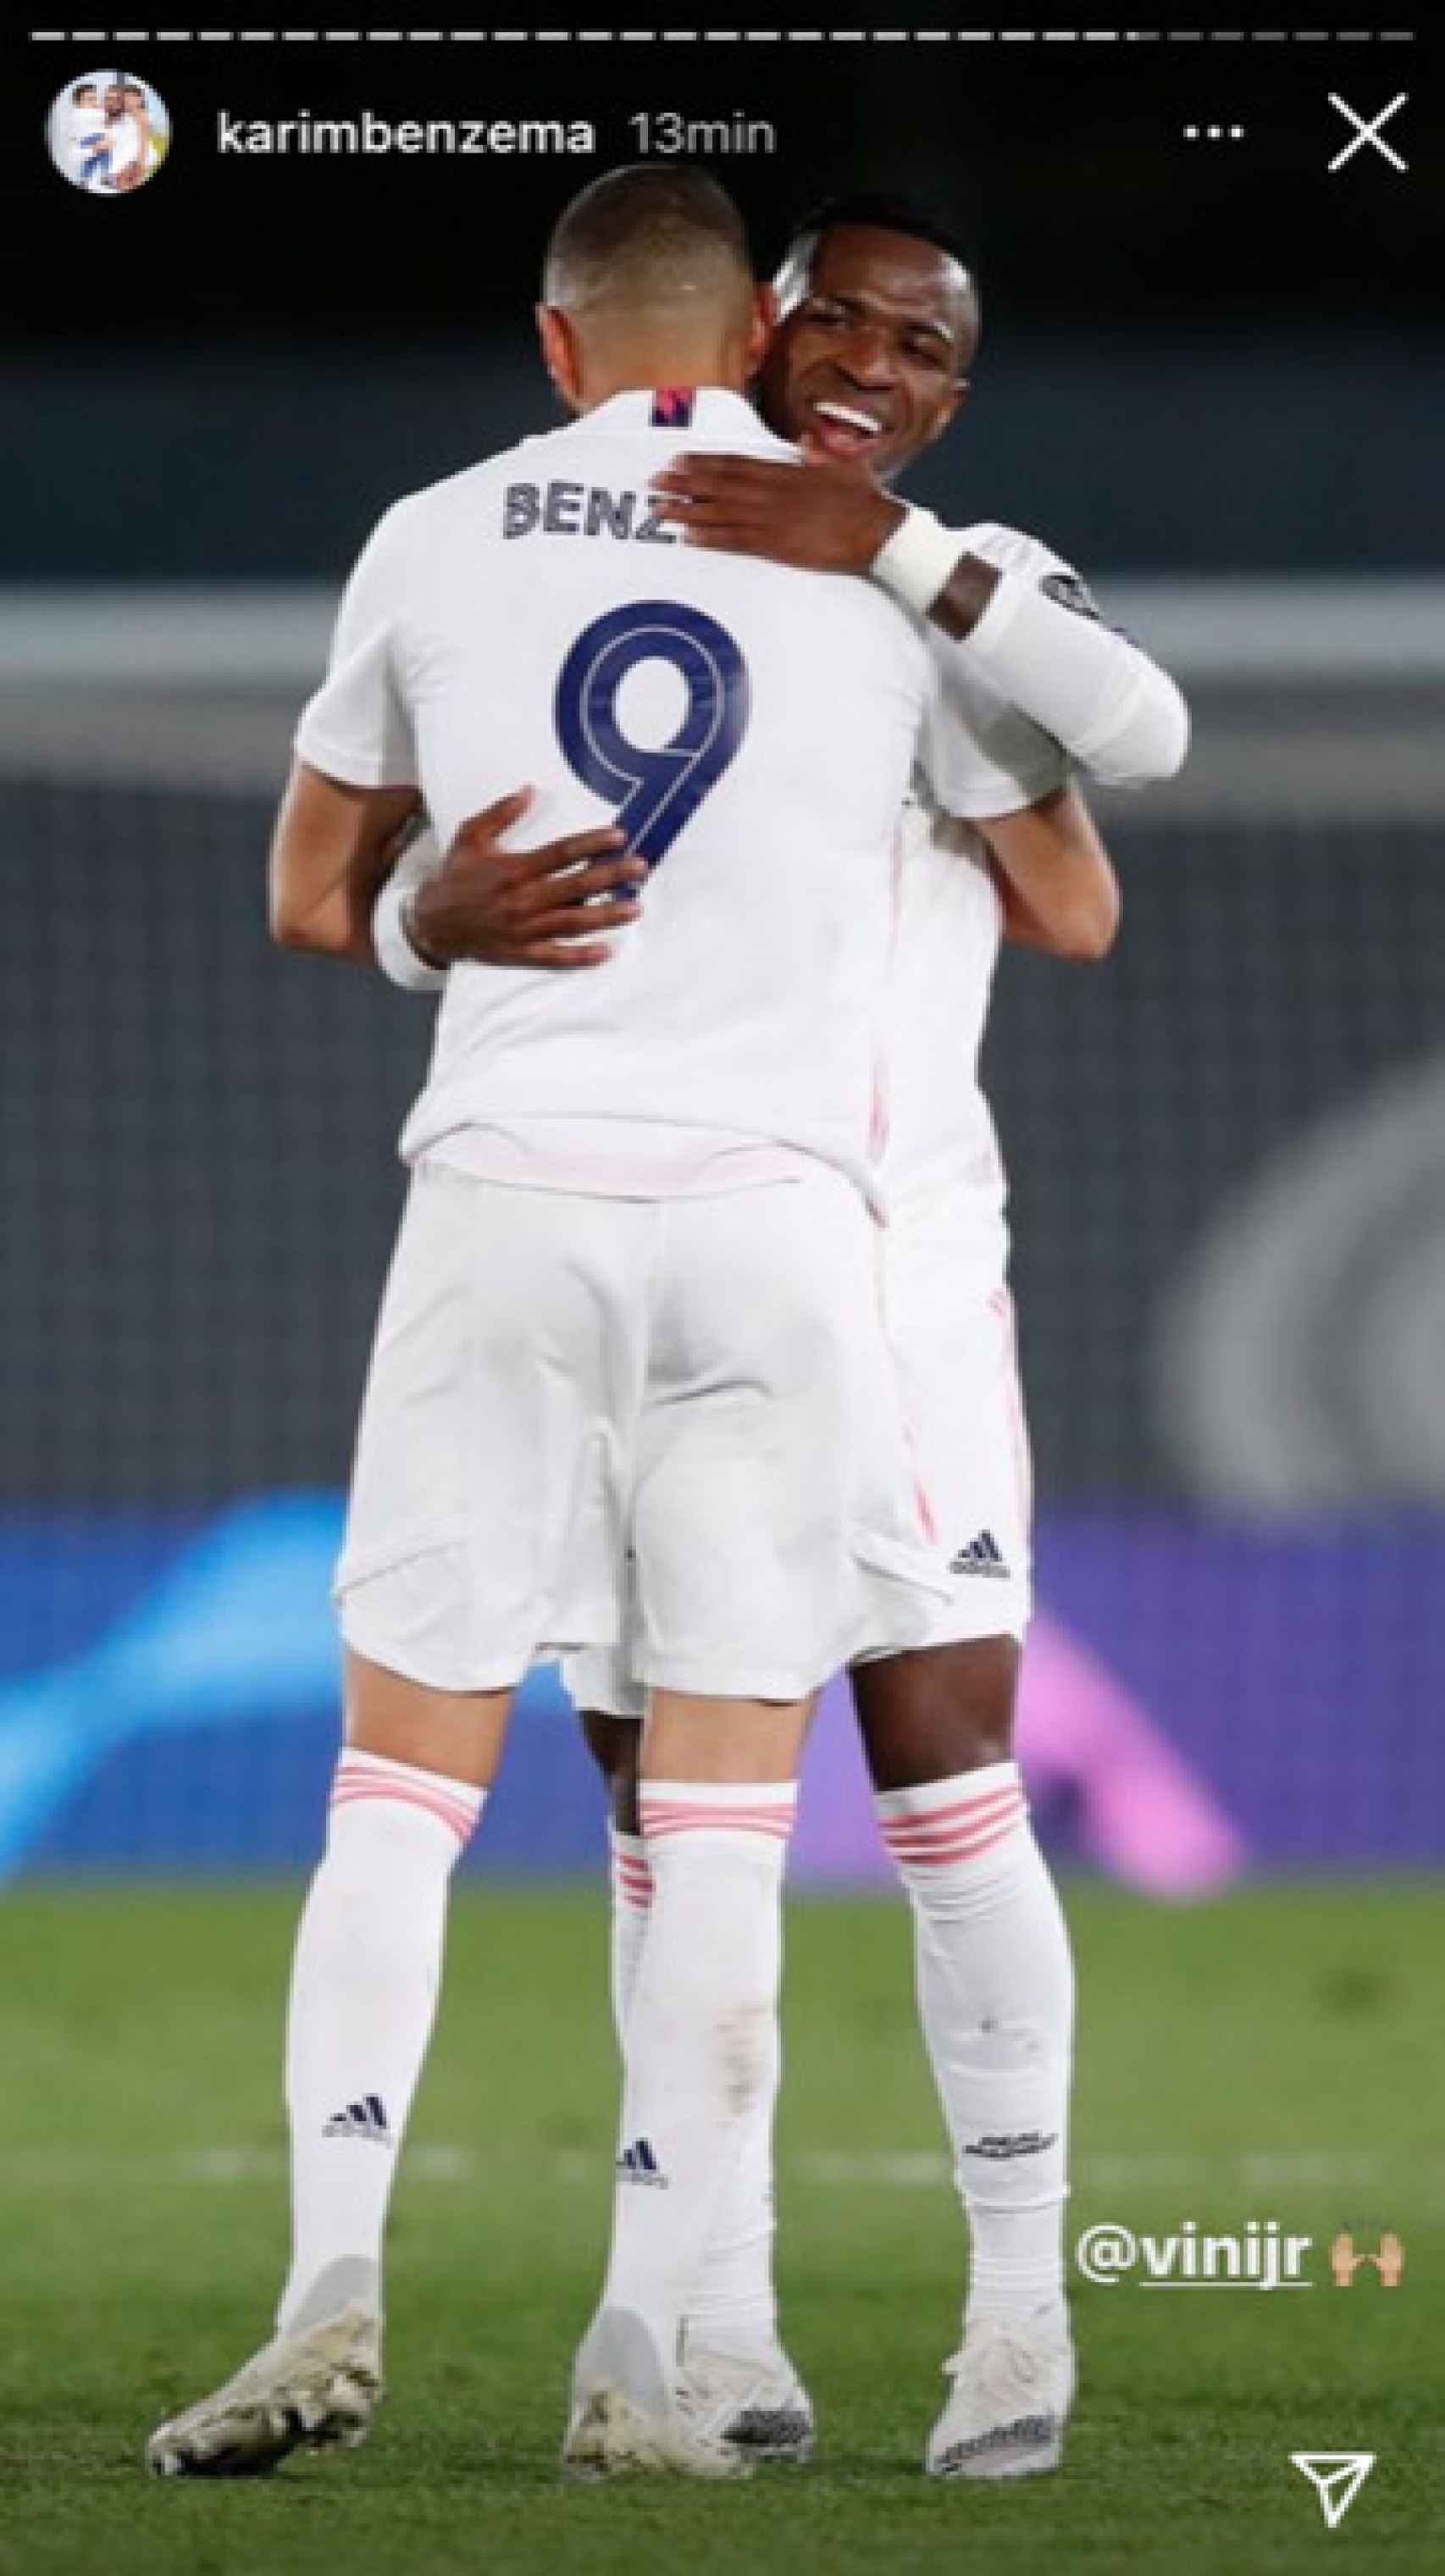 El abrazo entre Benzema y Vinicius